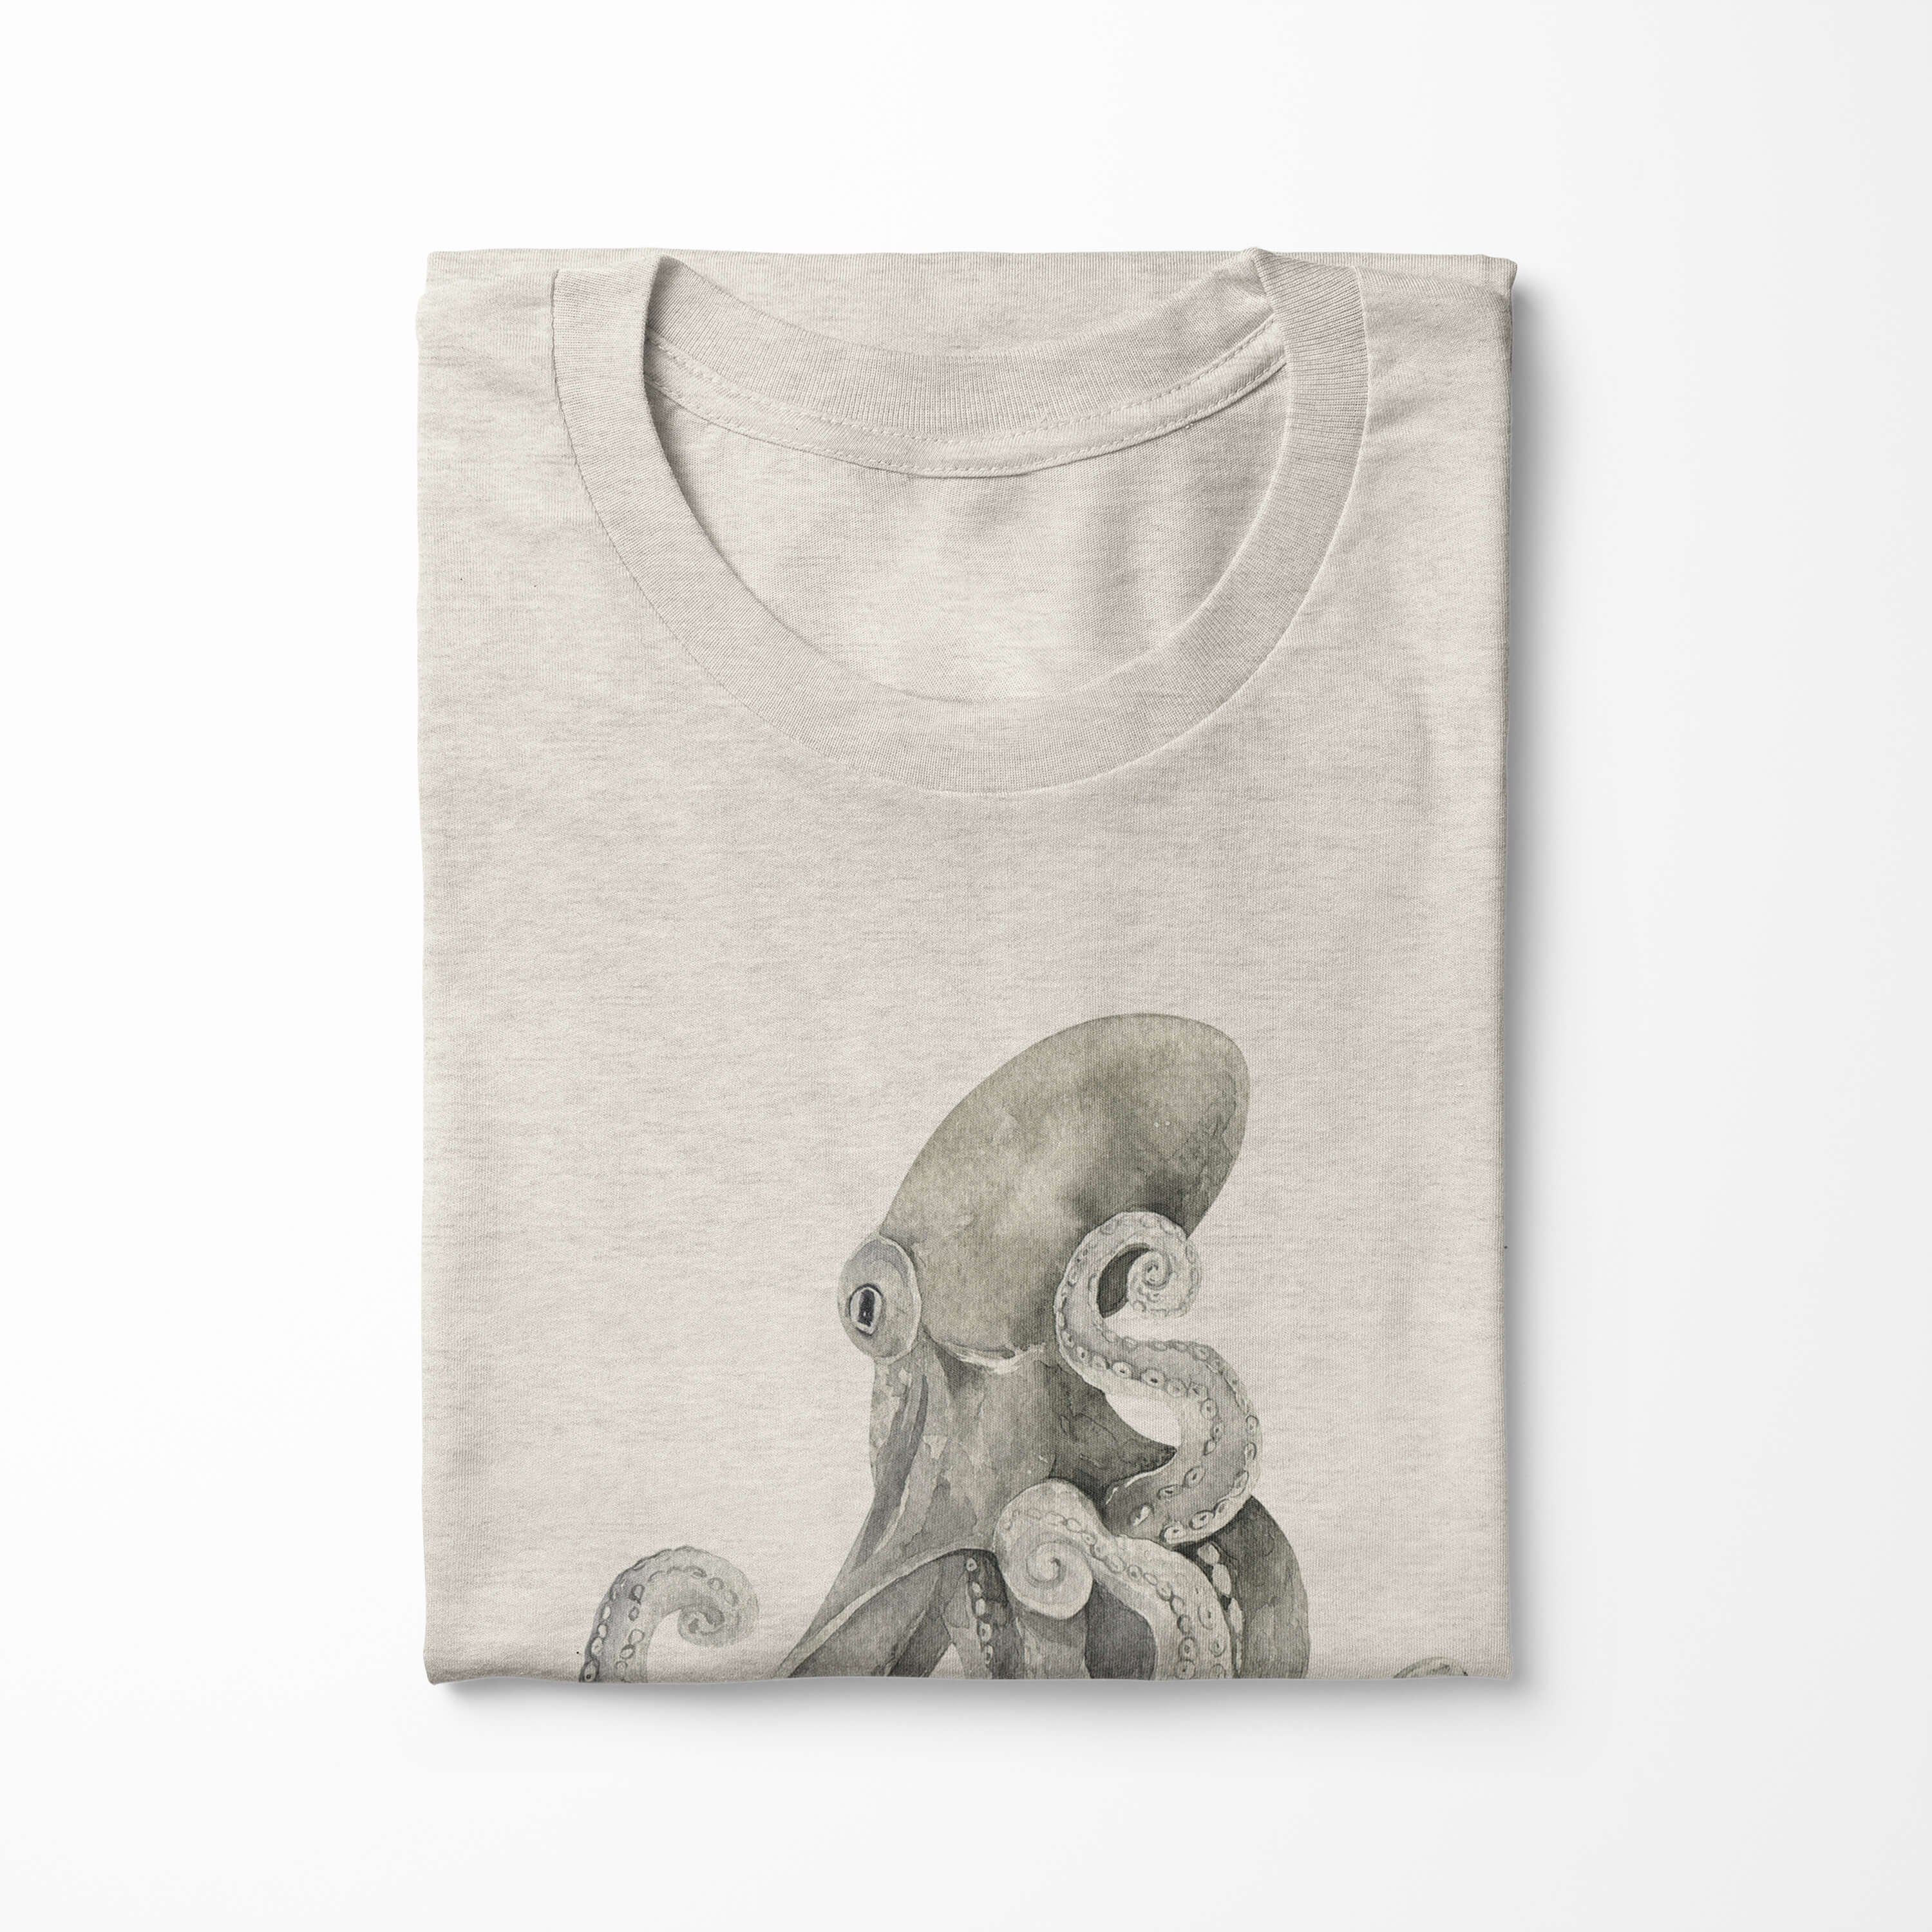 Oktopus gekämmte T-Shirt Herren (1-tlg) Motiv Nachhaltig Bio-Baumwolle Wasserfarben Shirt Sinus aus Art 100% T-Shirt Ökomode